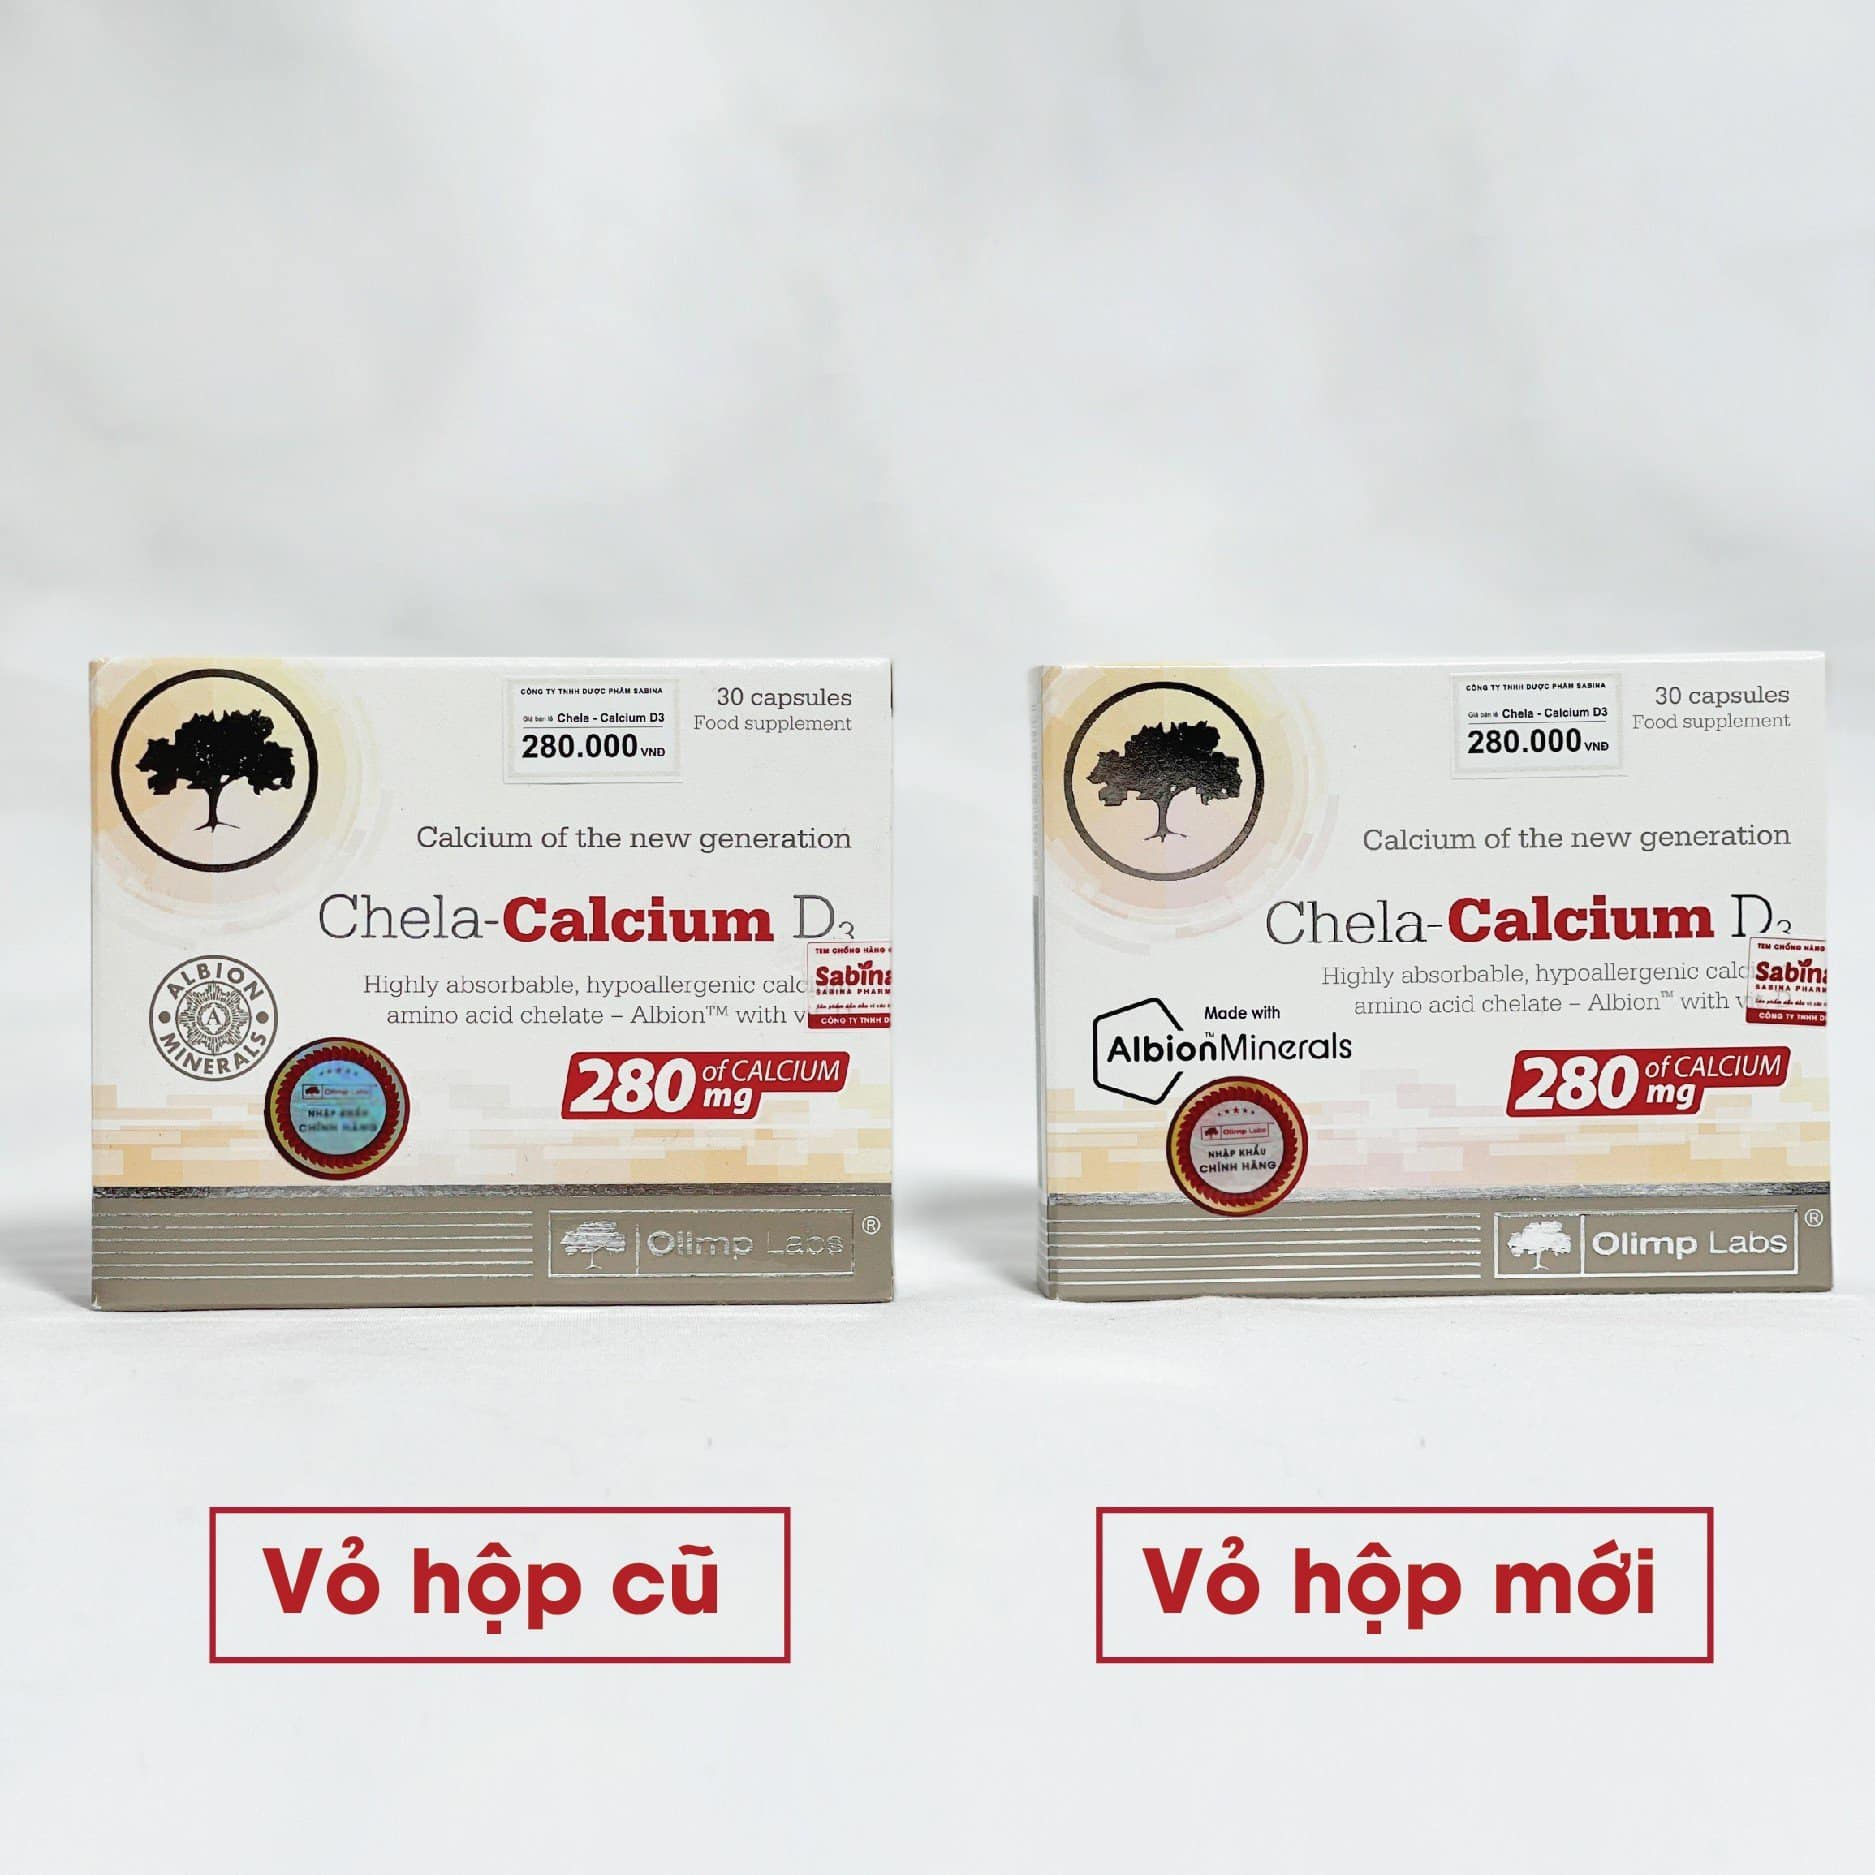 Thay đổi logo trên vỏ hộp Chela-Calcium D3 chính hãng